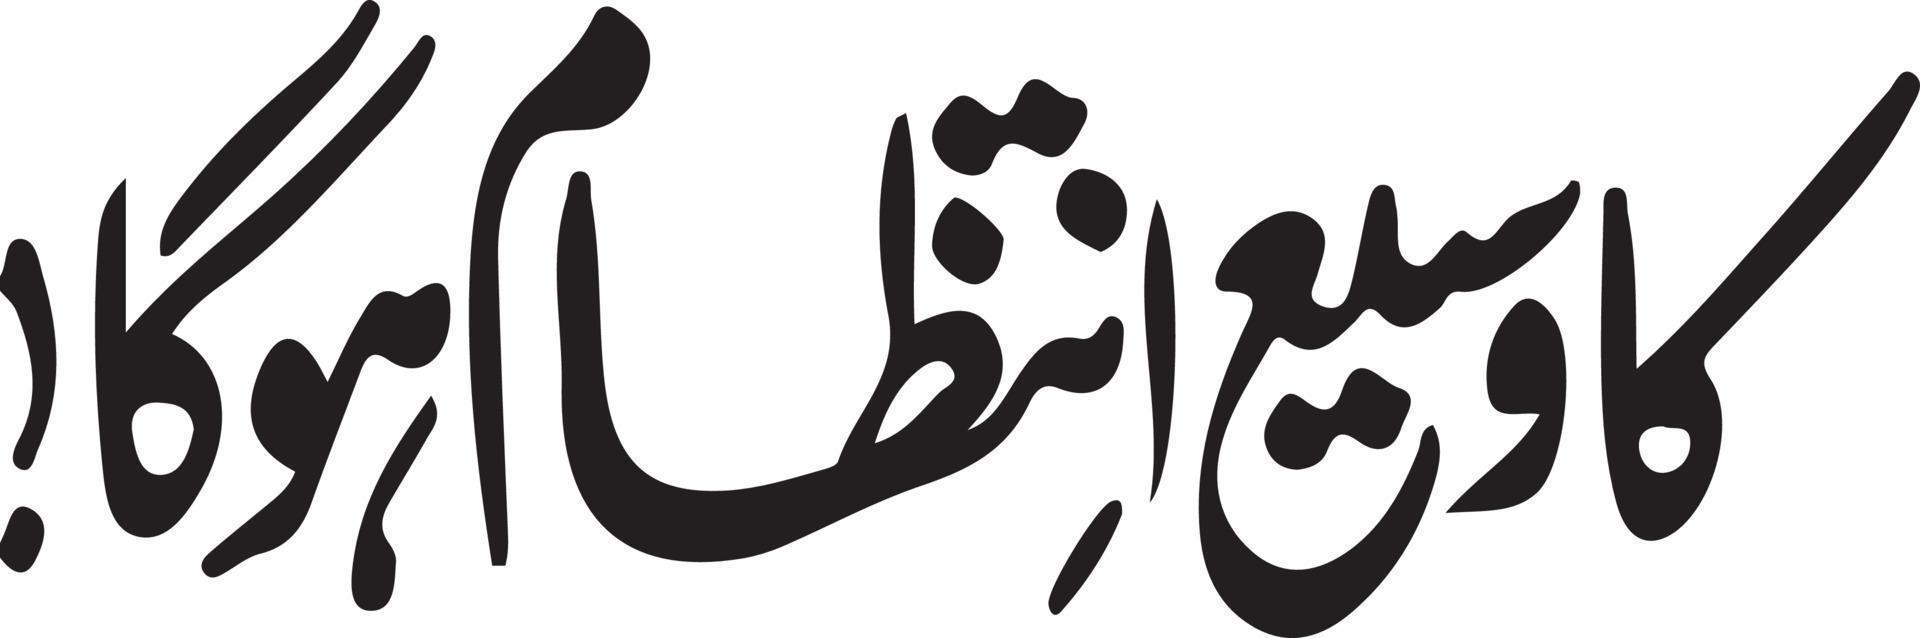 ka wasee intazam ho ga Islamitisch Arabisch schoonschrift vrij vector